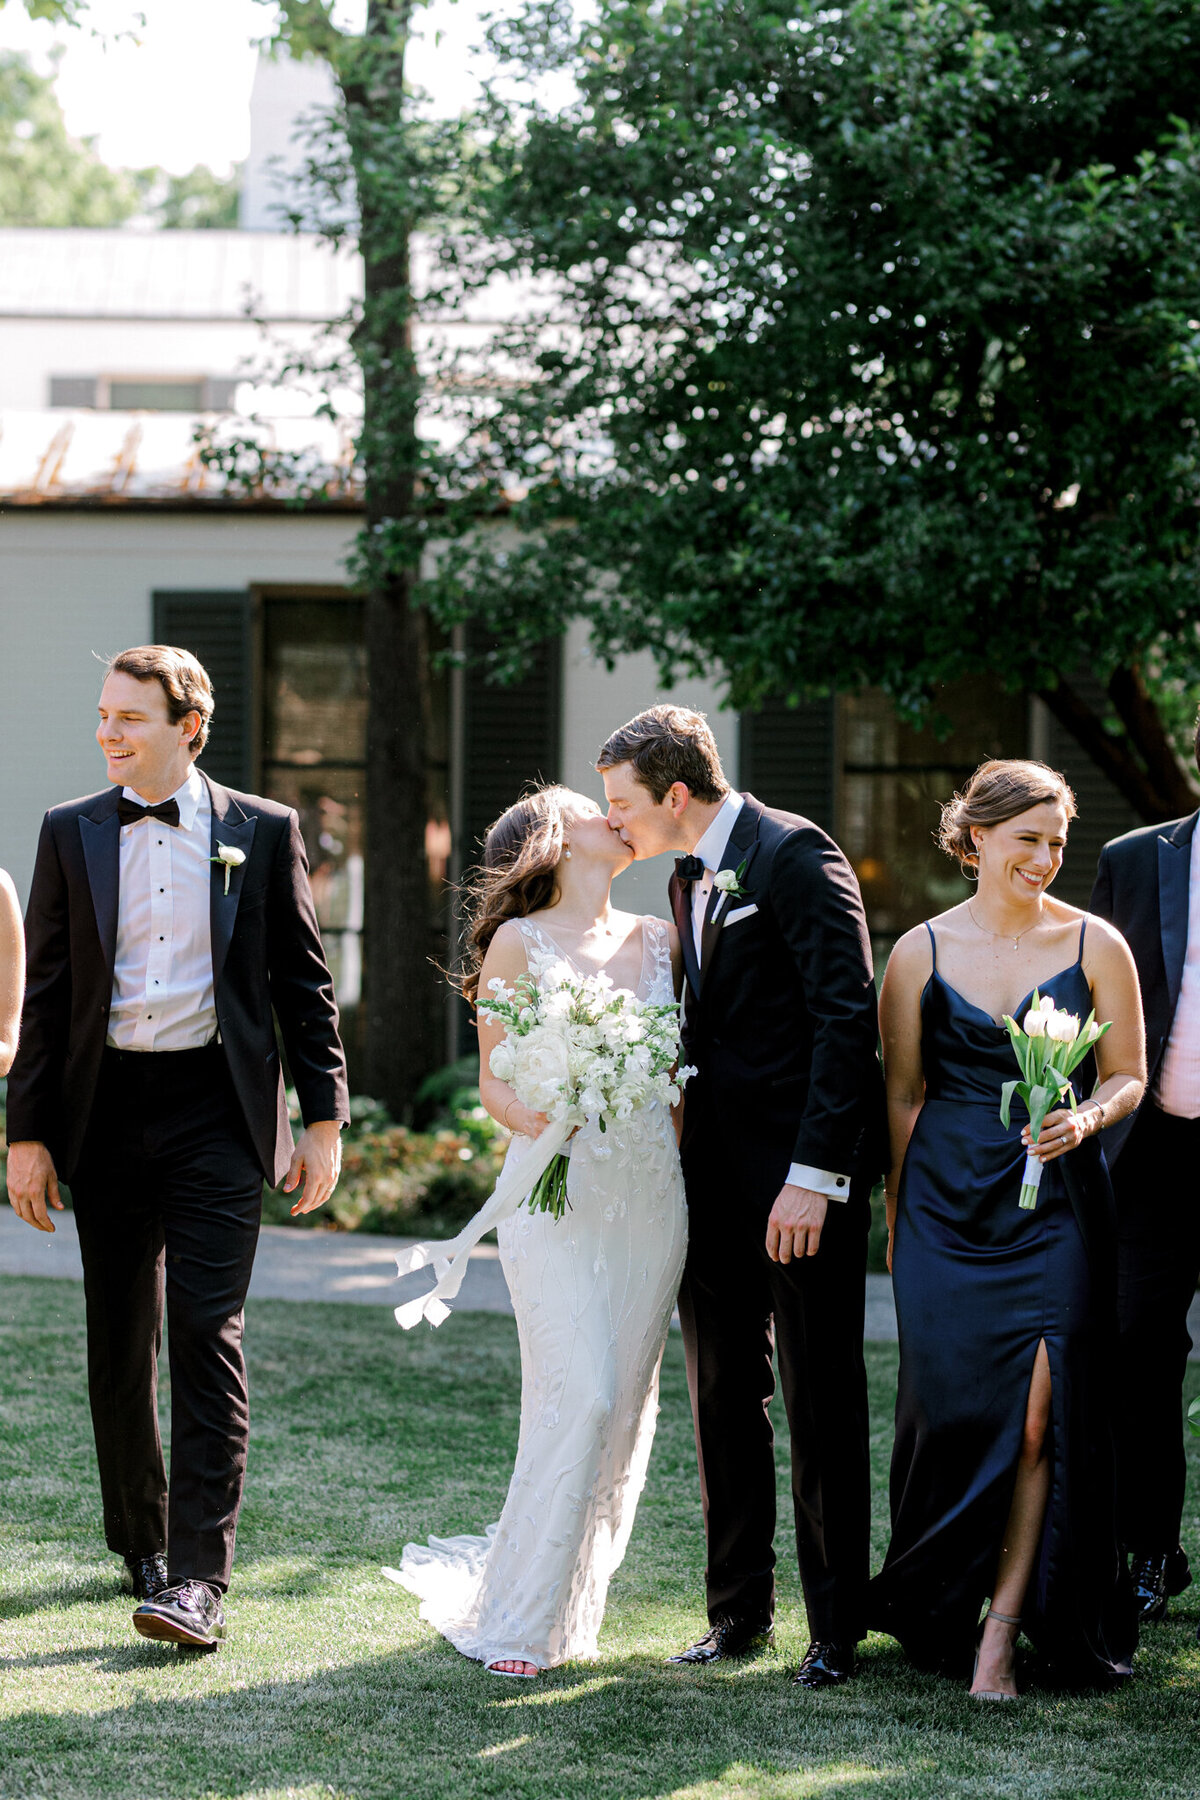 Gena & Matt's Wedding at the Dallas Arboretum | Dallas Wedding Photographer | Sami Kathryn Photography-114